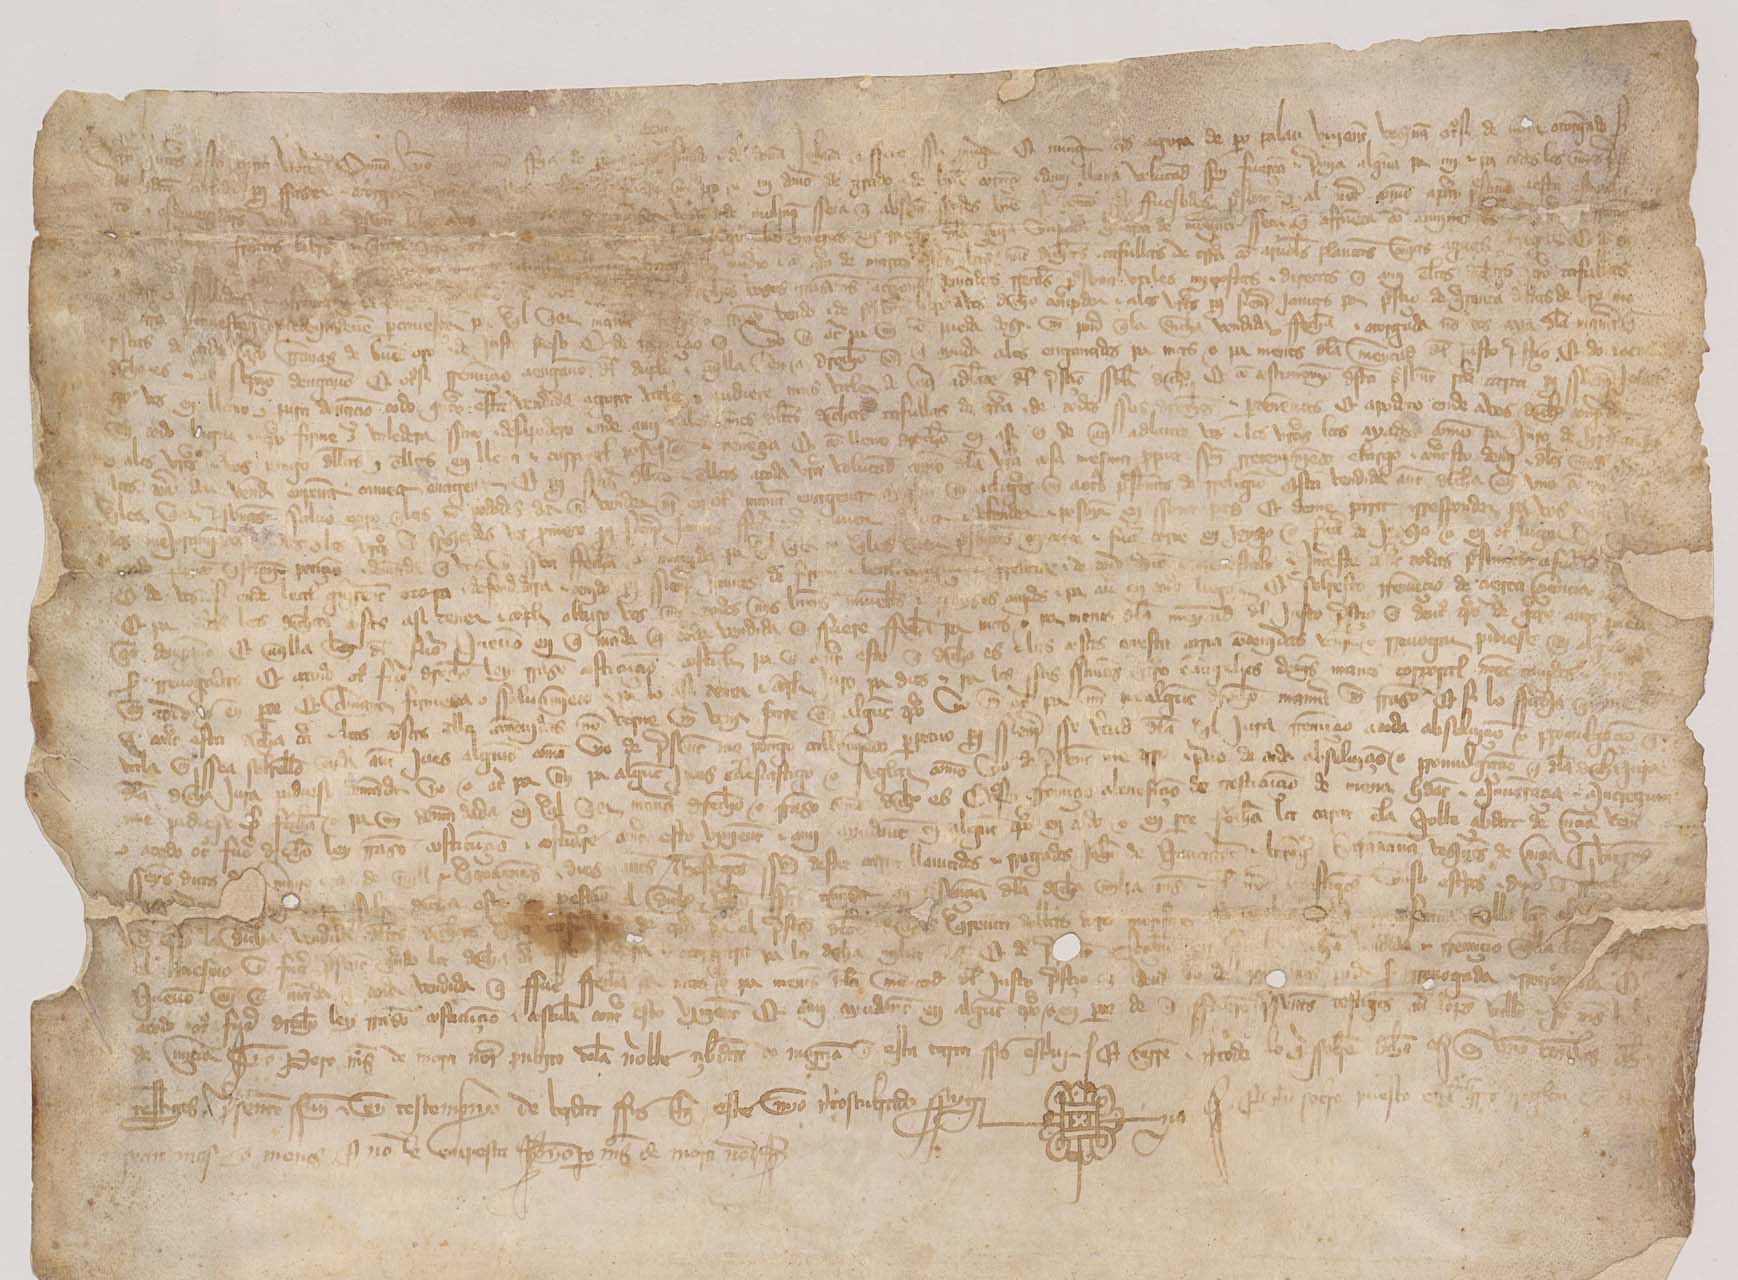 Carta de venta de Milia Martínez, hija de Pedro Artero, a favor de Juan Fernández de Cañizares, vecino de Molina Seca, de cuatro tahúllas de tierra de riego en la huerta de Molina Seca.